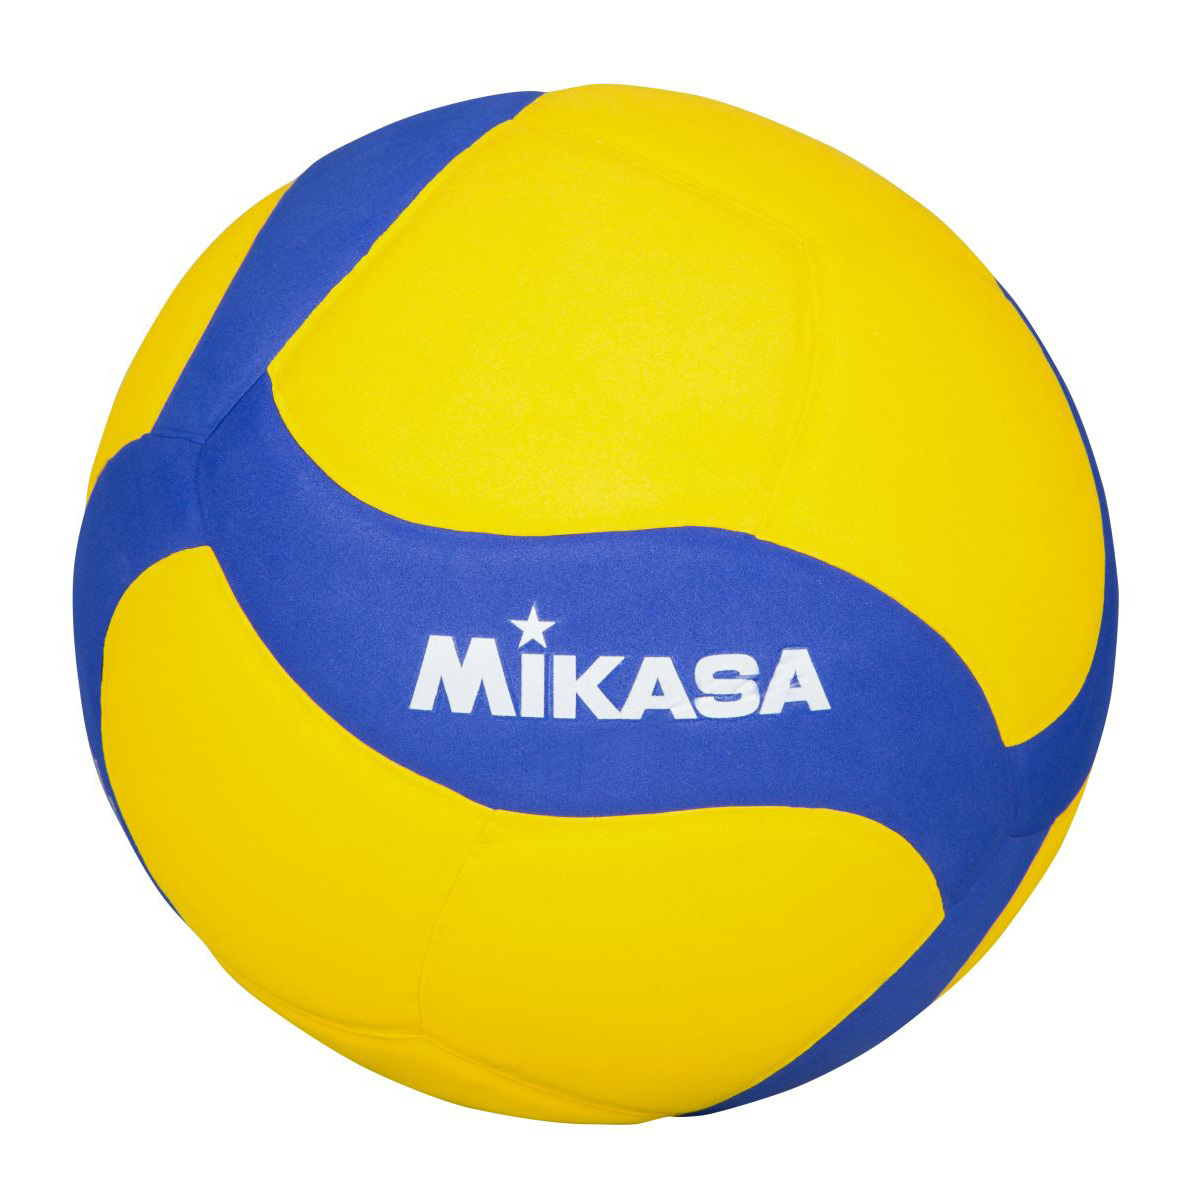 Mikasa Volleyball V800w Kaufen Sport Thieme